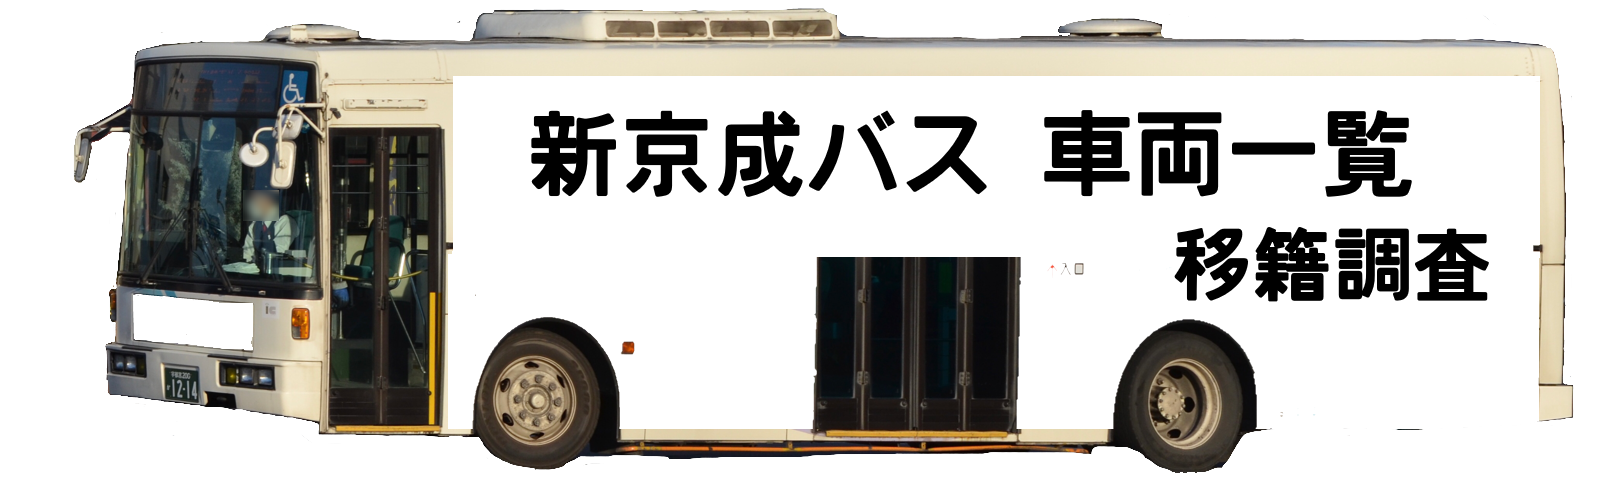 新京成バス車両一覧・移籍調査